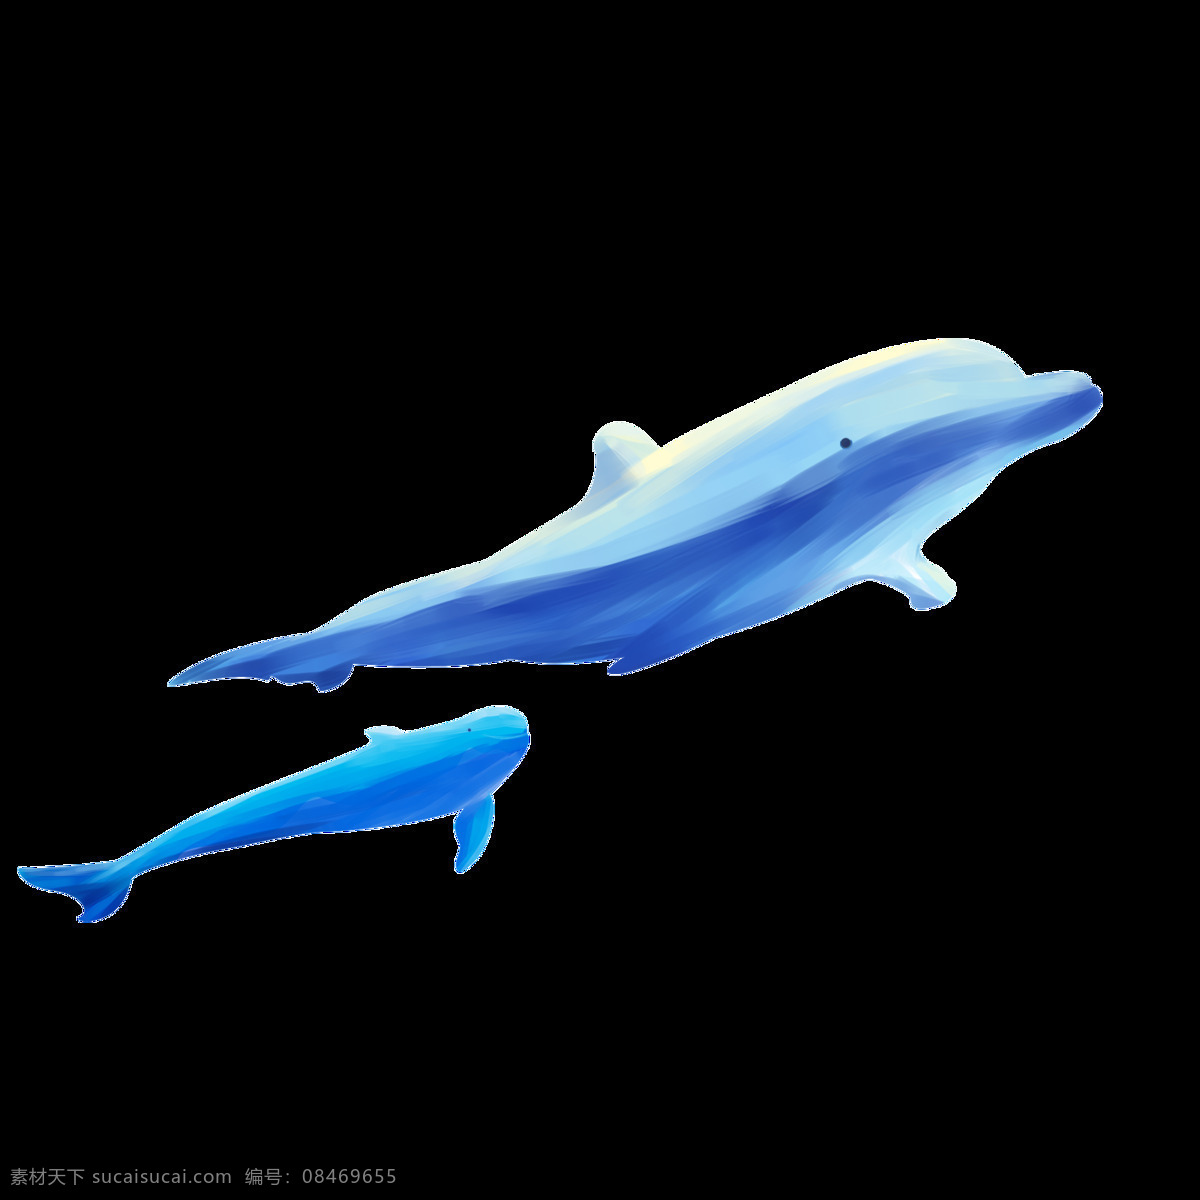 卡通 手绘 海豚 商用 元素 蓝色 动物 海洋生物 psd设计